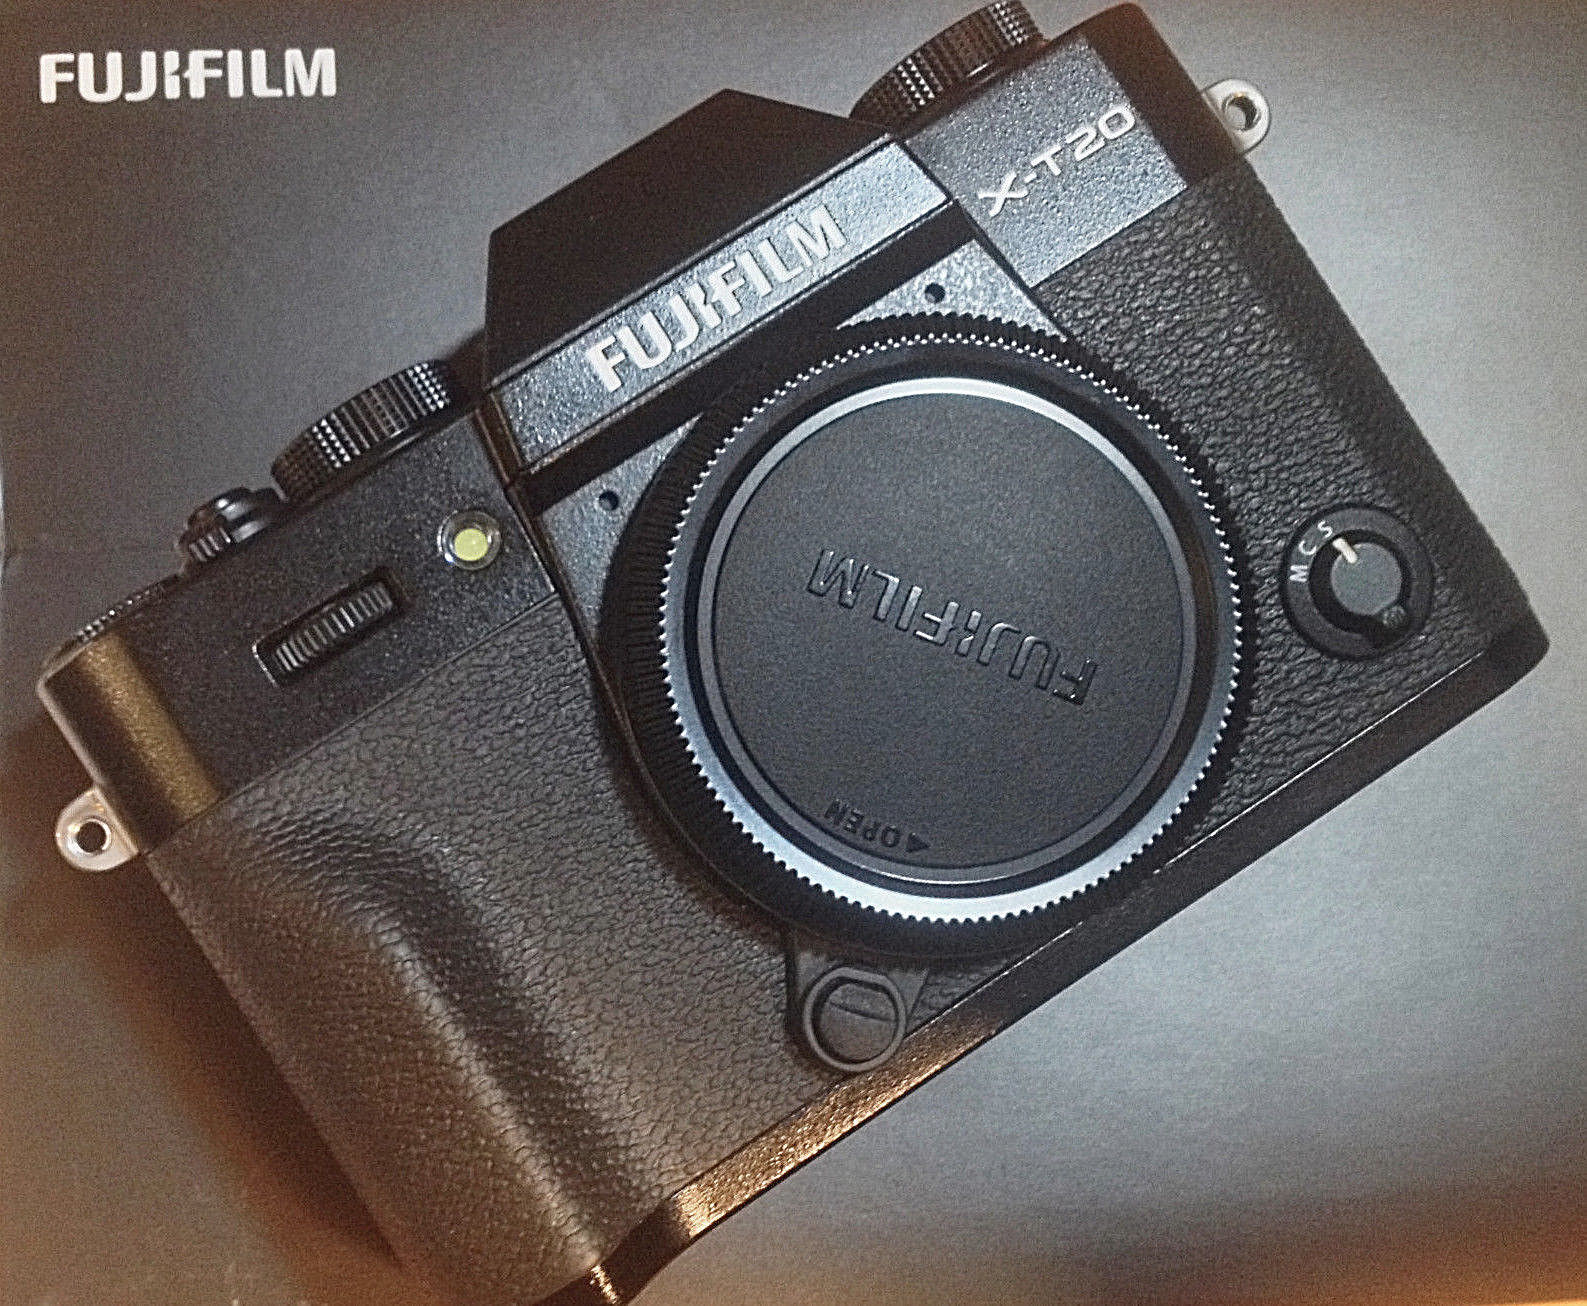 FUJI Fujifilm X Series X-T20 24,3MP mit 1.5 Jahre Garantie + OPV